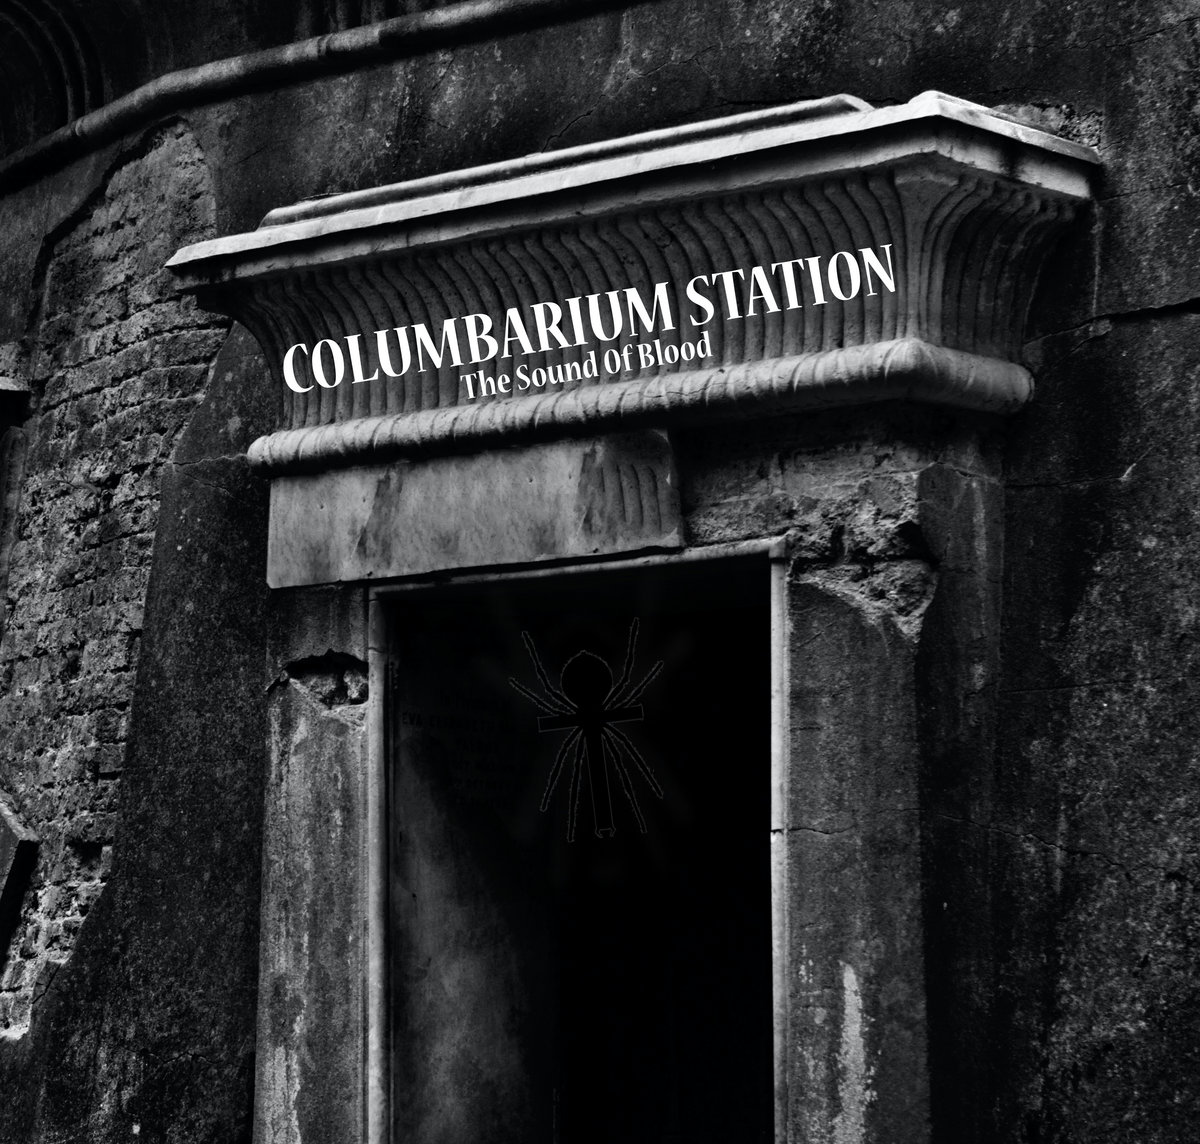 Columbarium station cover